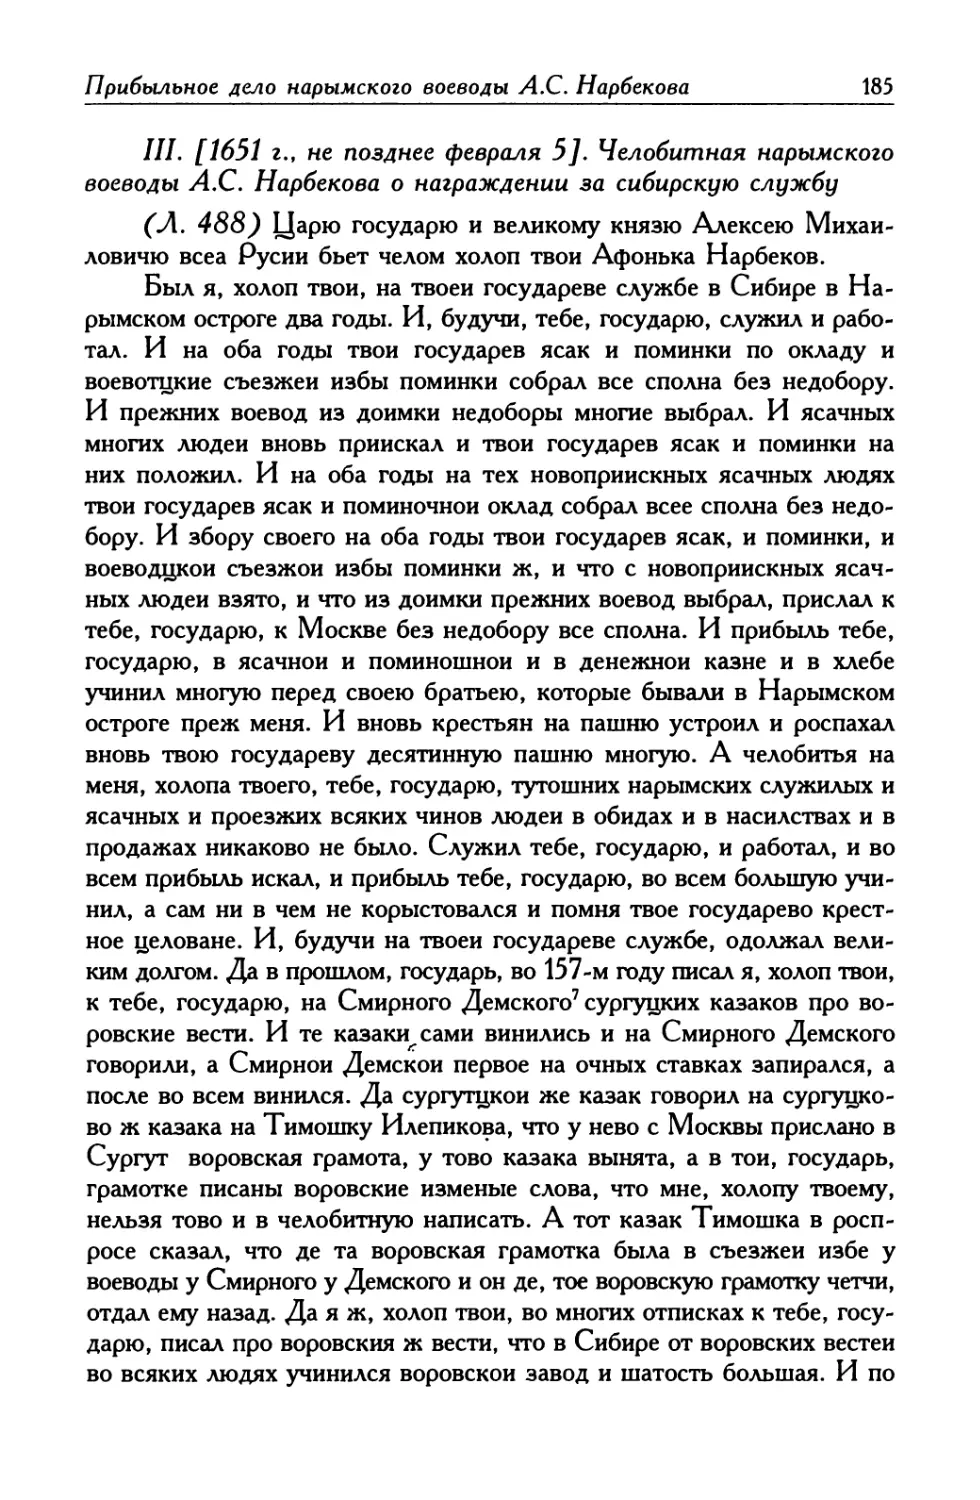 III. [1651 г., не позднее февраля 5]. Челобитная нарымского воеводы А. С. Нарбекова о награждении за сибирскую службу